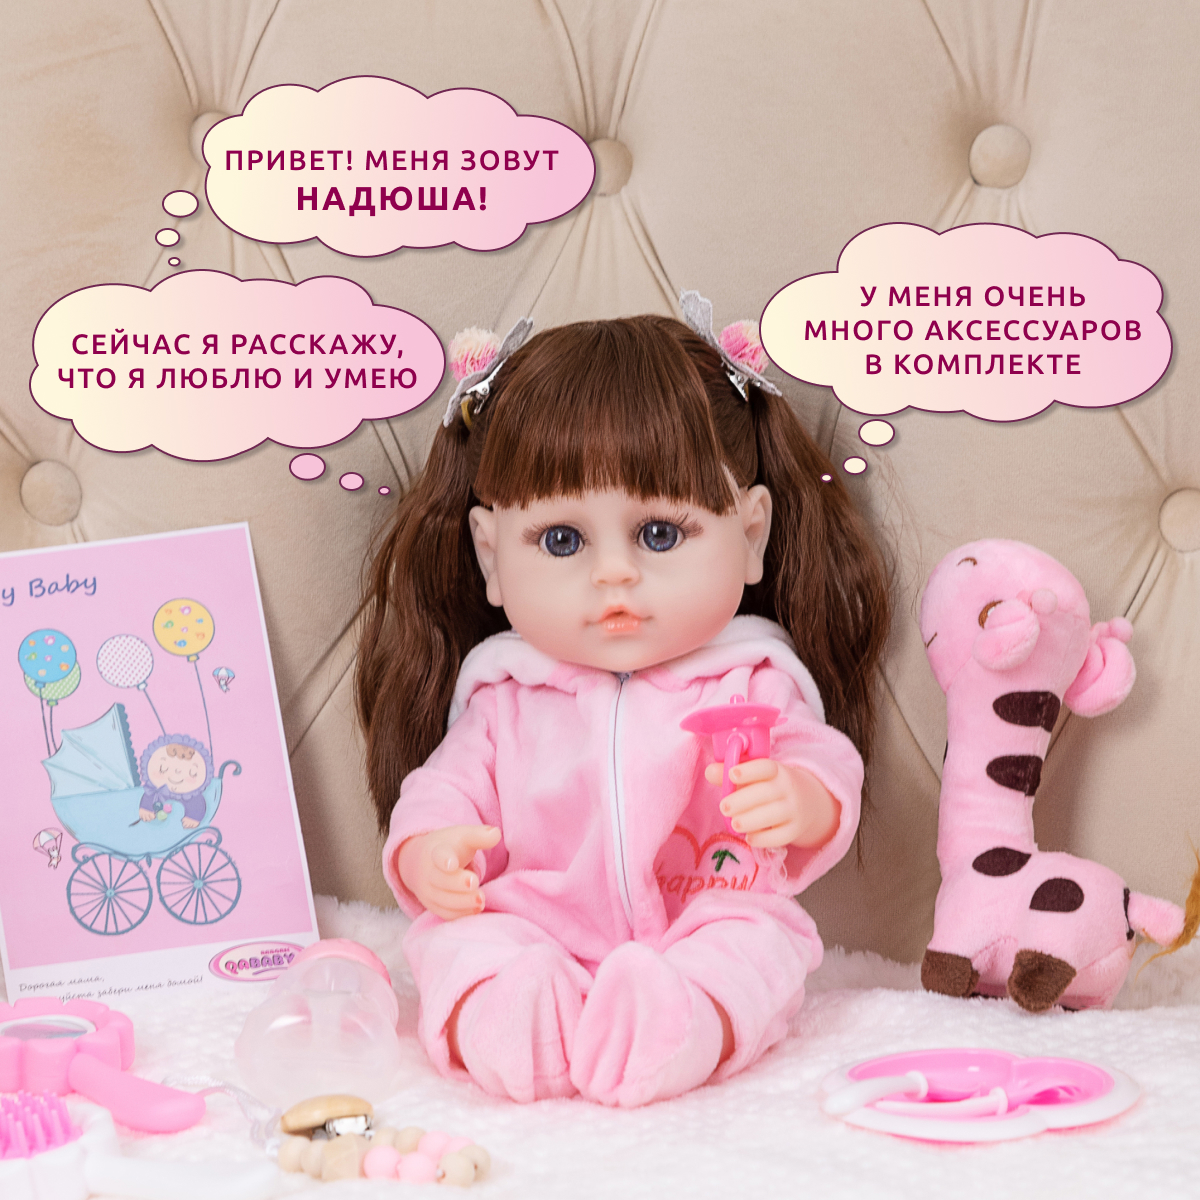 Кукла Реборн QA BABY Альбина девочка интерактивная Пупс набор игрушки для ванной для девочки 38 см 3805 - фото 2